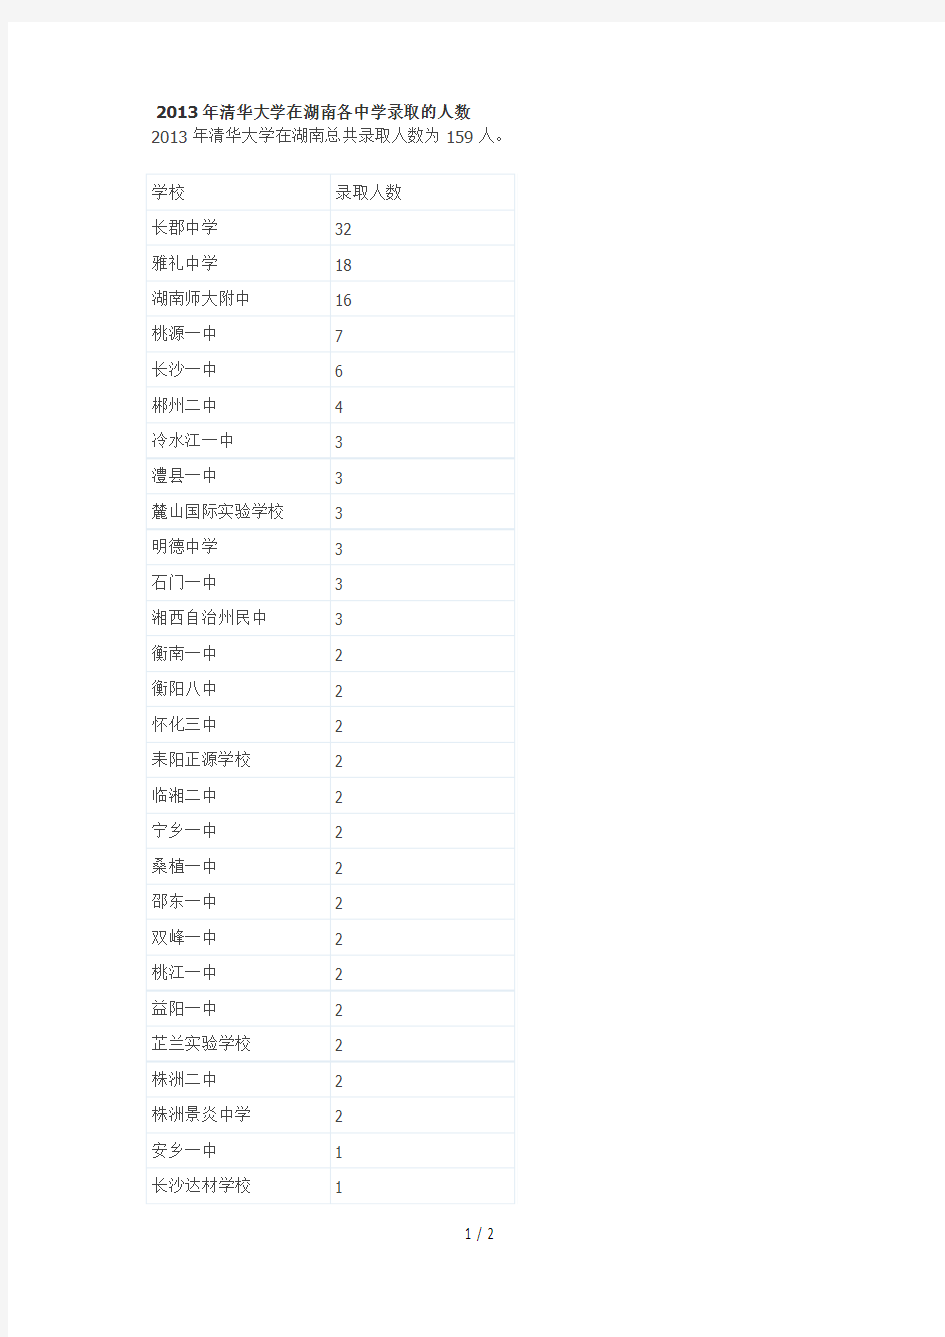 清华大学在湖南各中学录取的人数